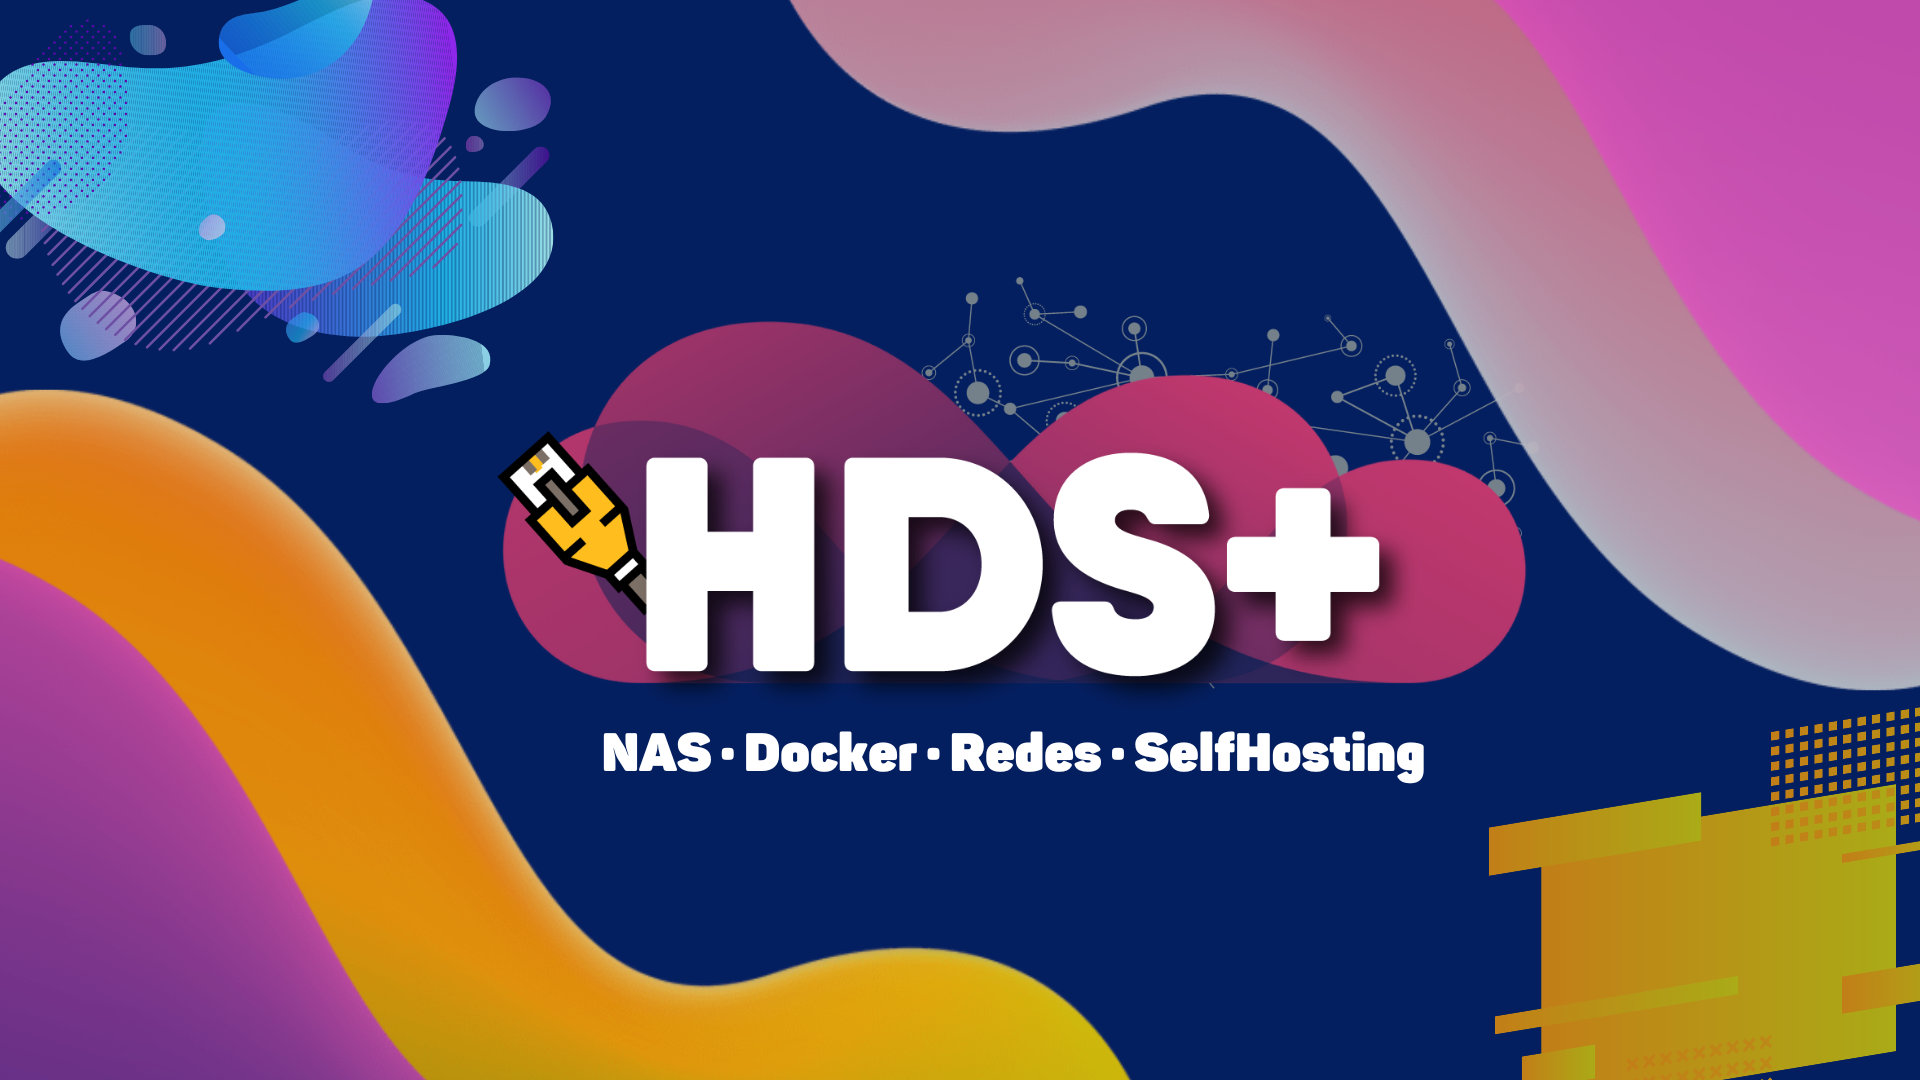 ¡HDS+ estrena nuevo logo!